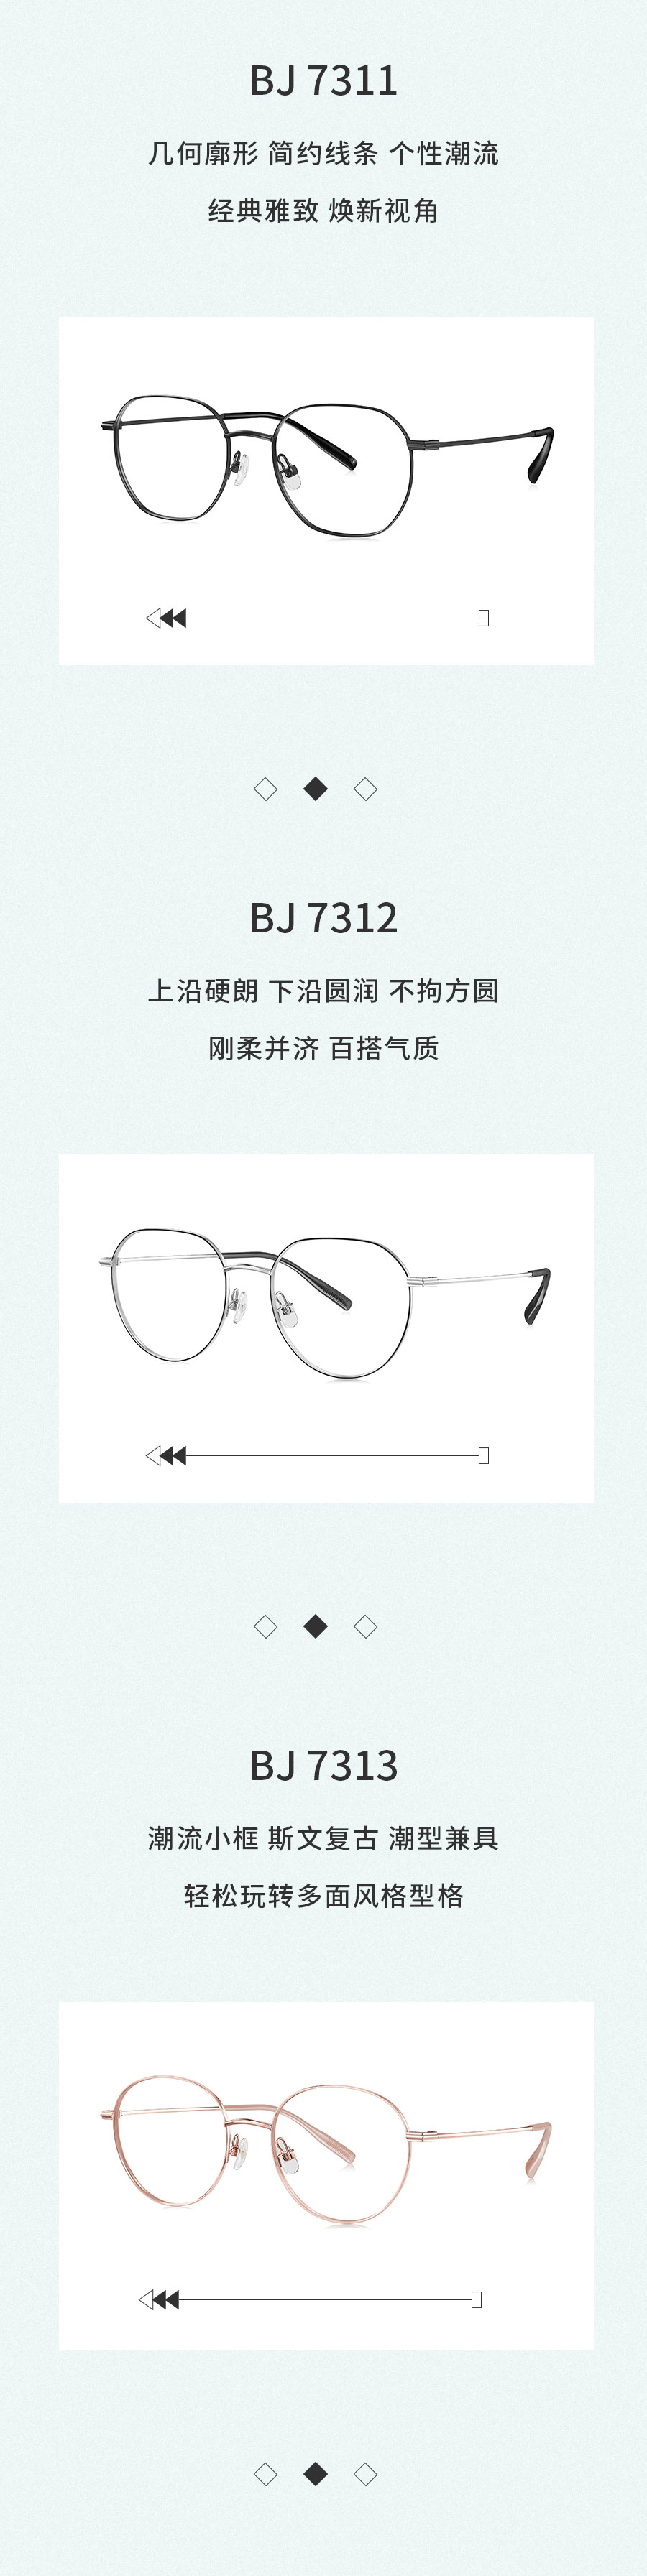 广信眼镜×BOLON暴龙联名款王俊凯同款百搭气质光学镜架BJ7312